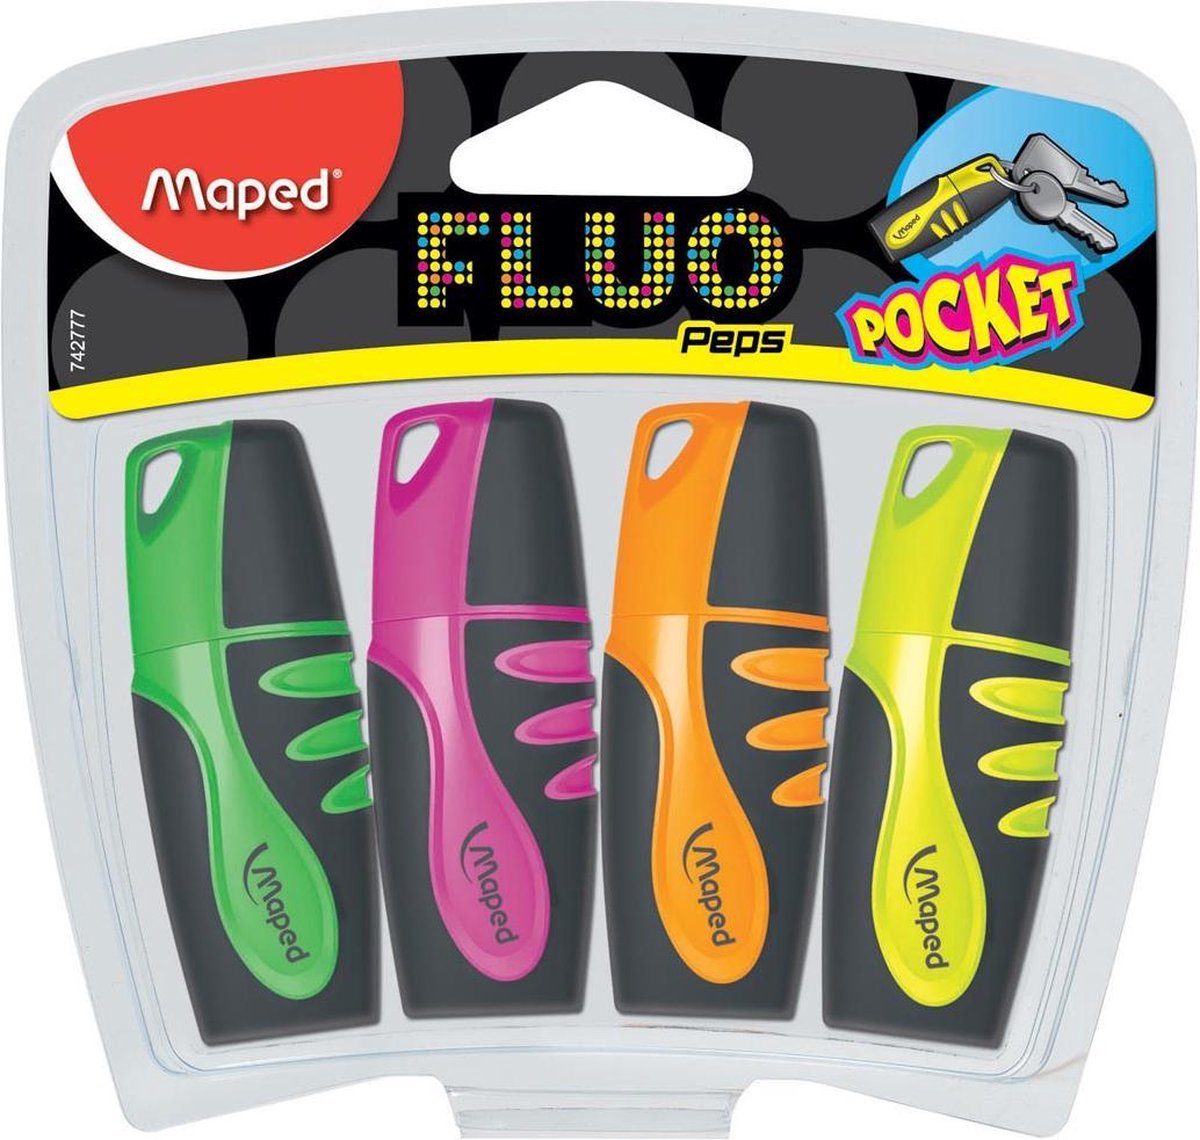 Surligneur fluo peps pen maped-couleurs assorties